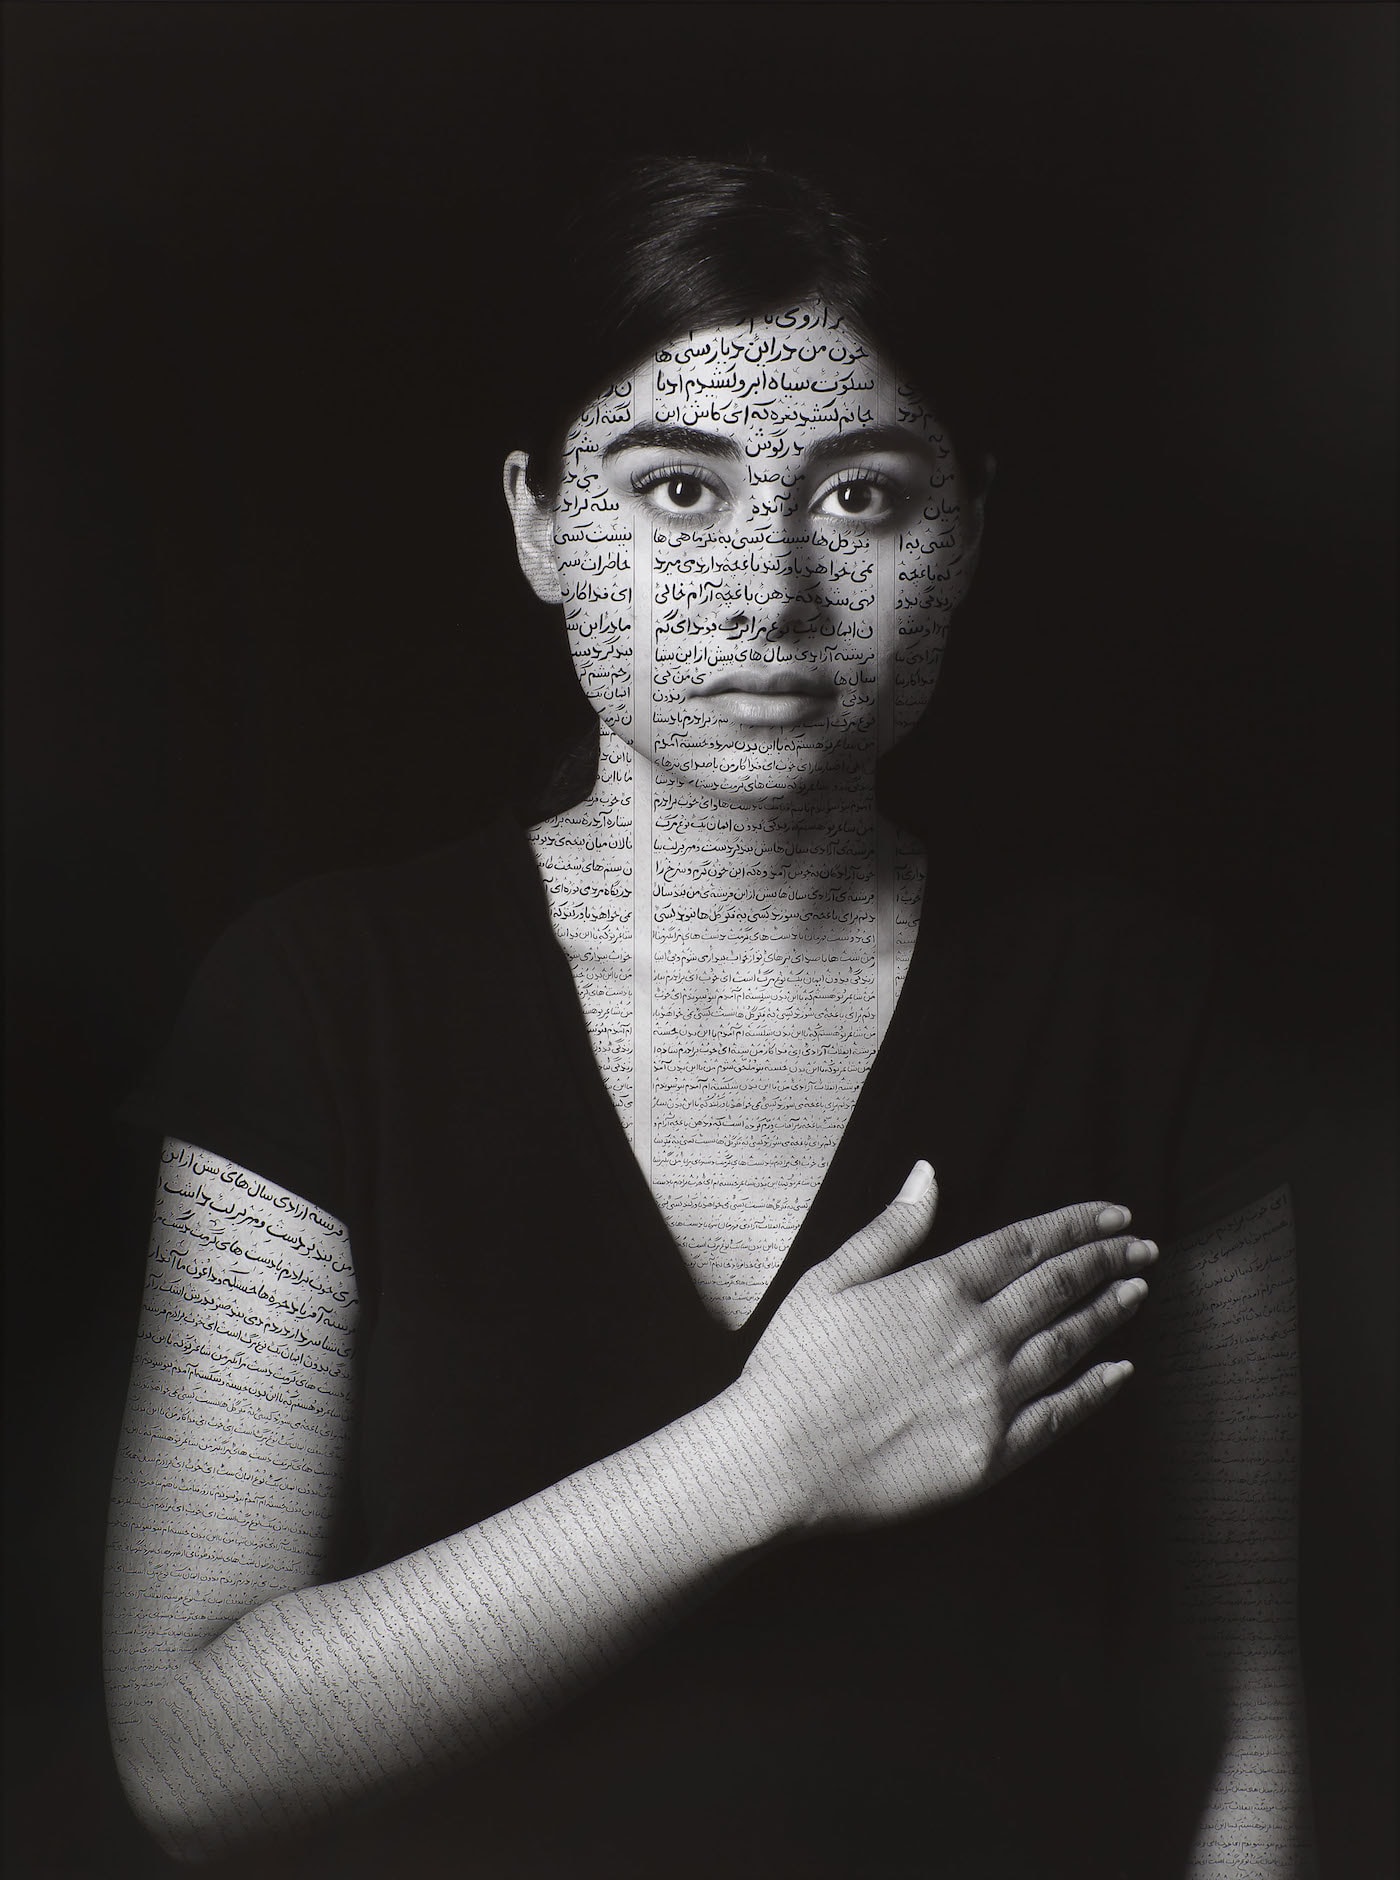 Fotografieausstellung von Shirin Neshat in der Pinakothek der Moderne // HIMBEER